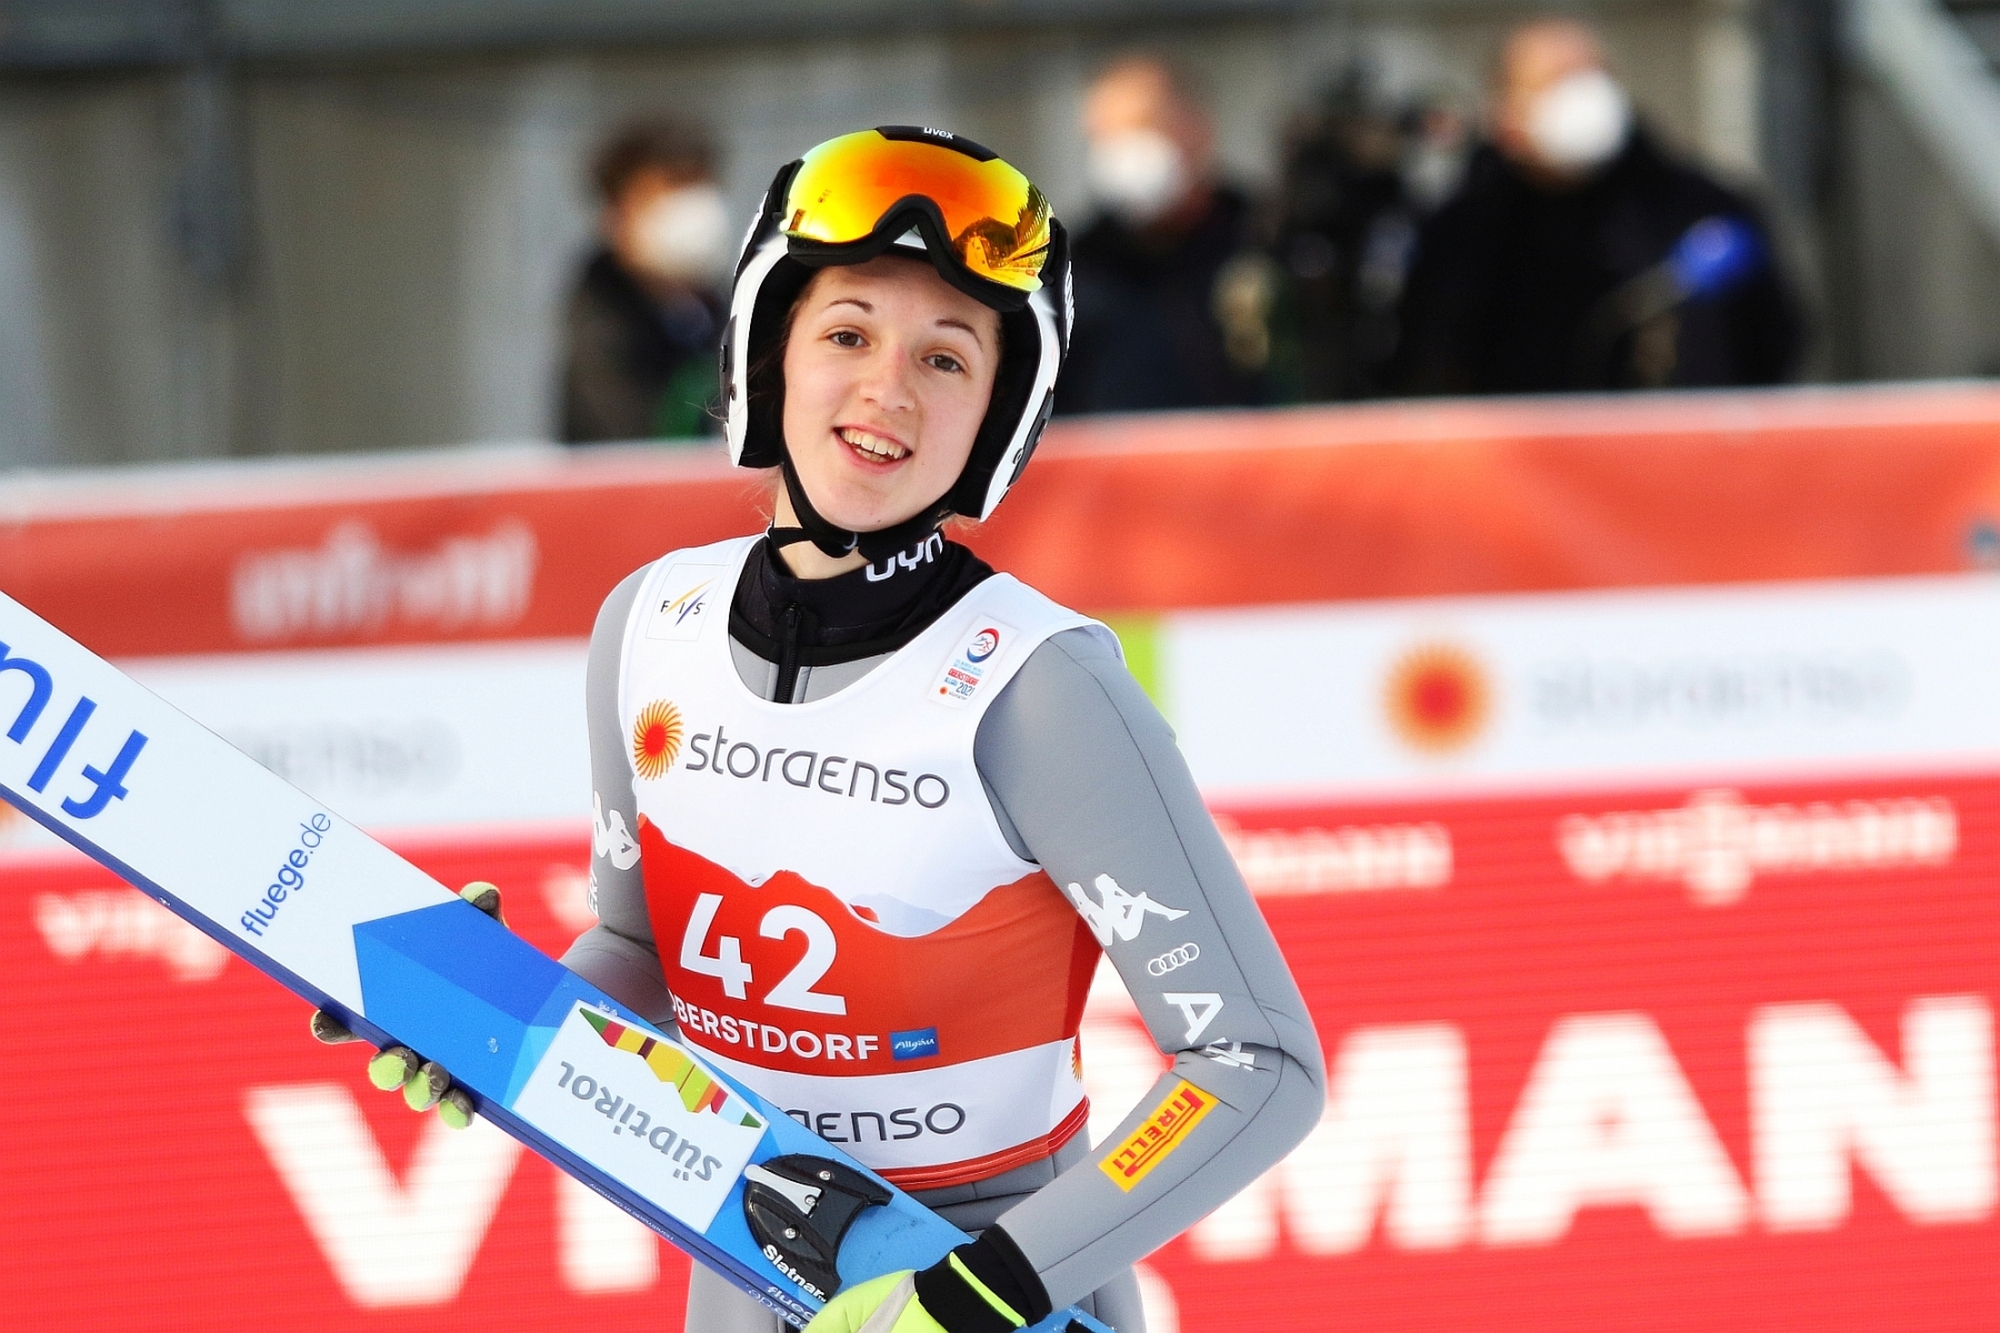 Mistrzostwa Swiata Oberstdorf2021 treningikobiet fotJuliaPiatkowska JessicaMalsiner - WŁOCHY (skoczkinie)